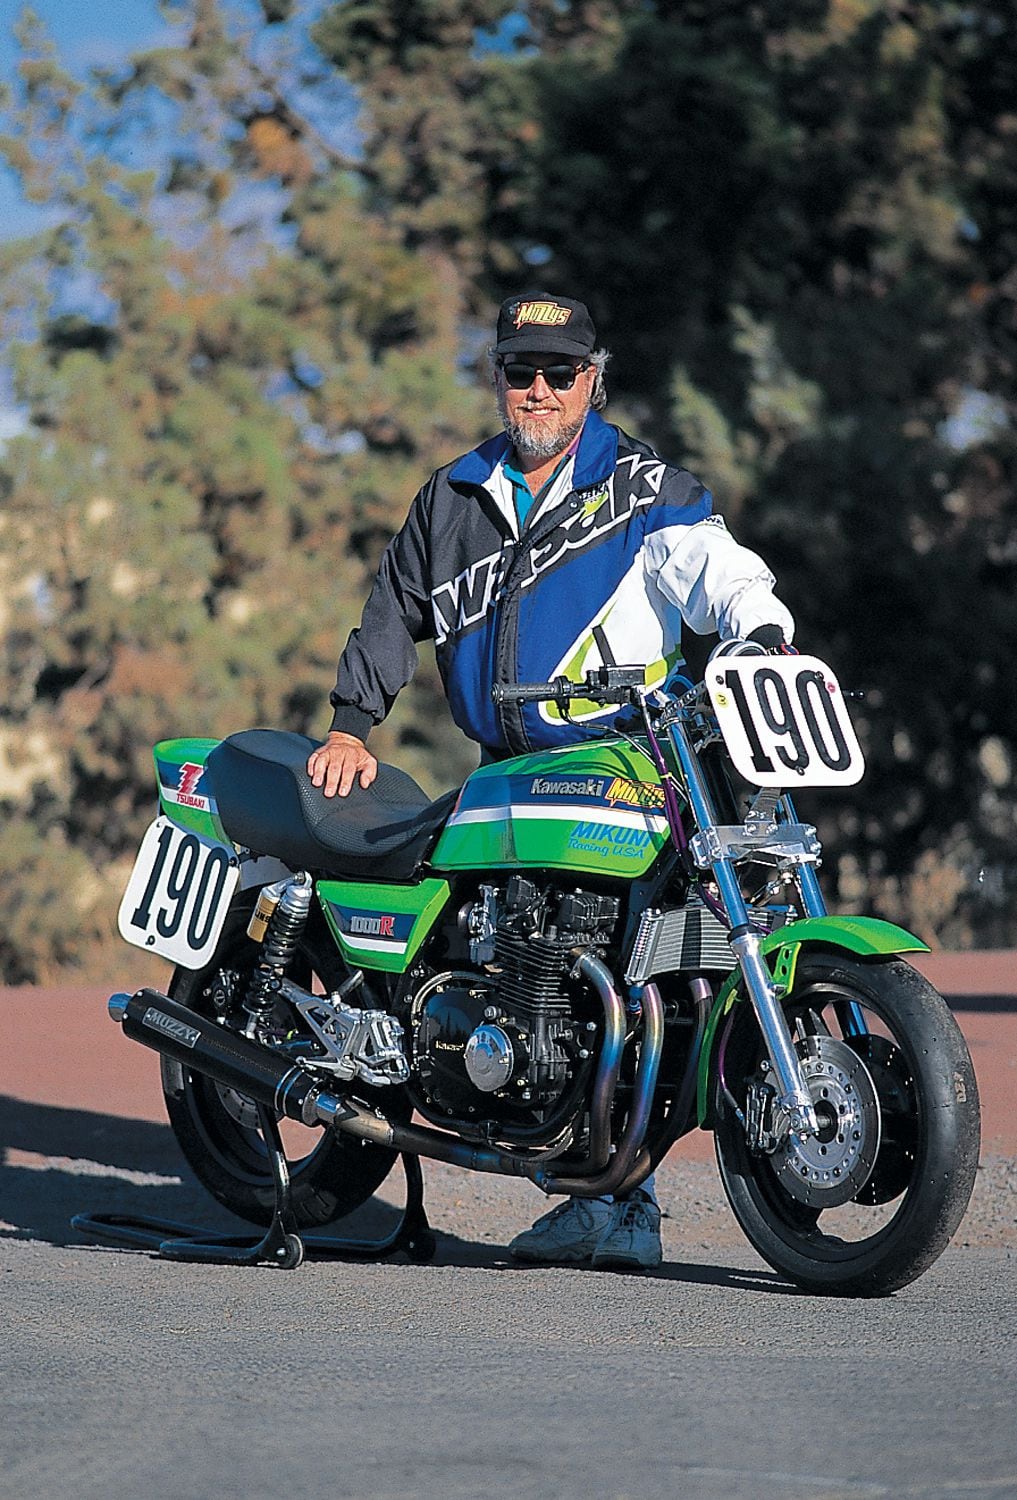 Dave Turner and his '82 Kawasaki KZ1000R